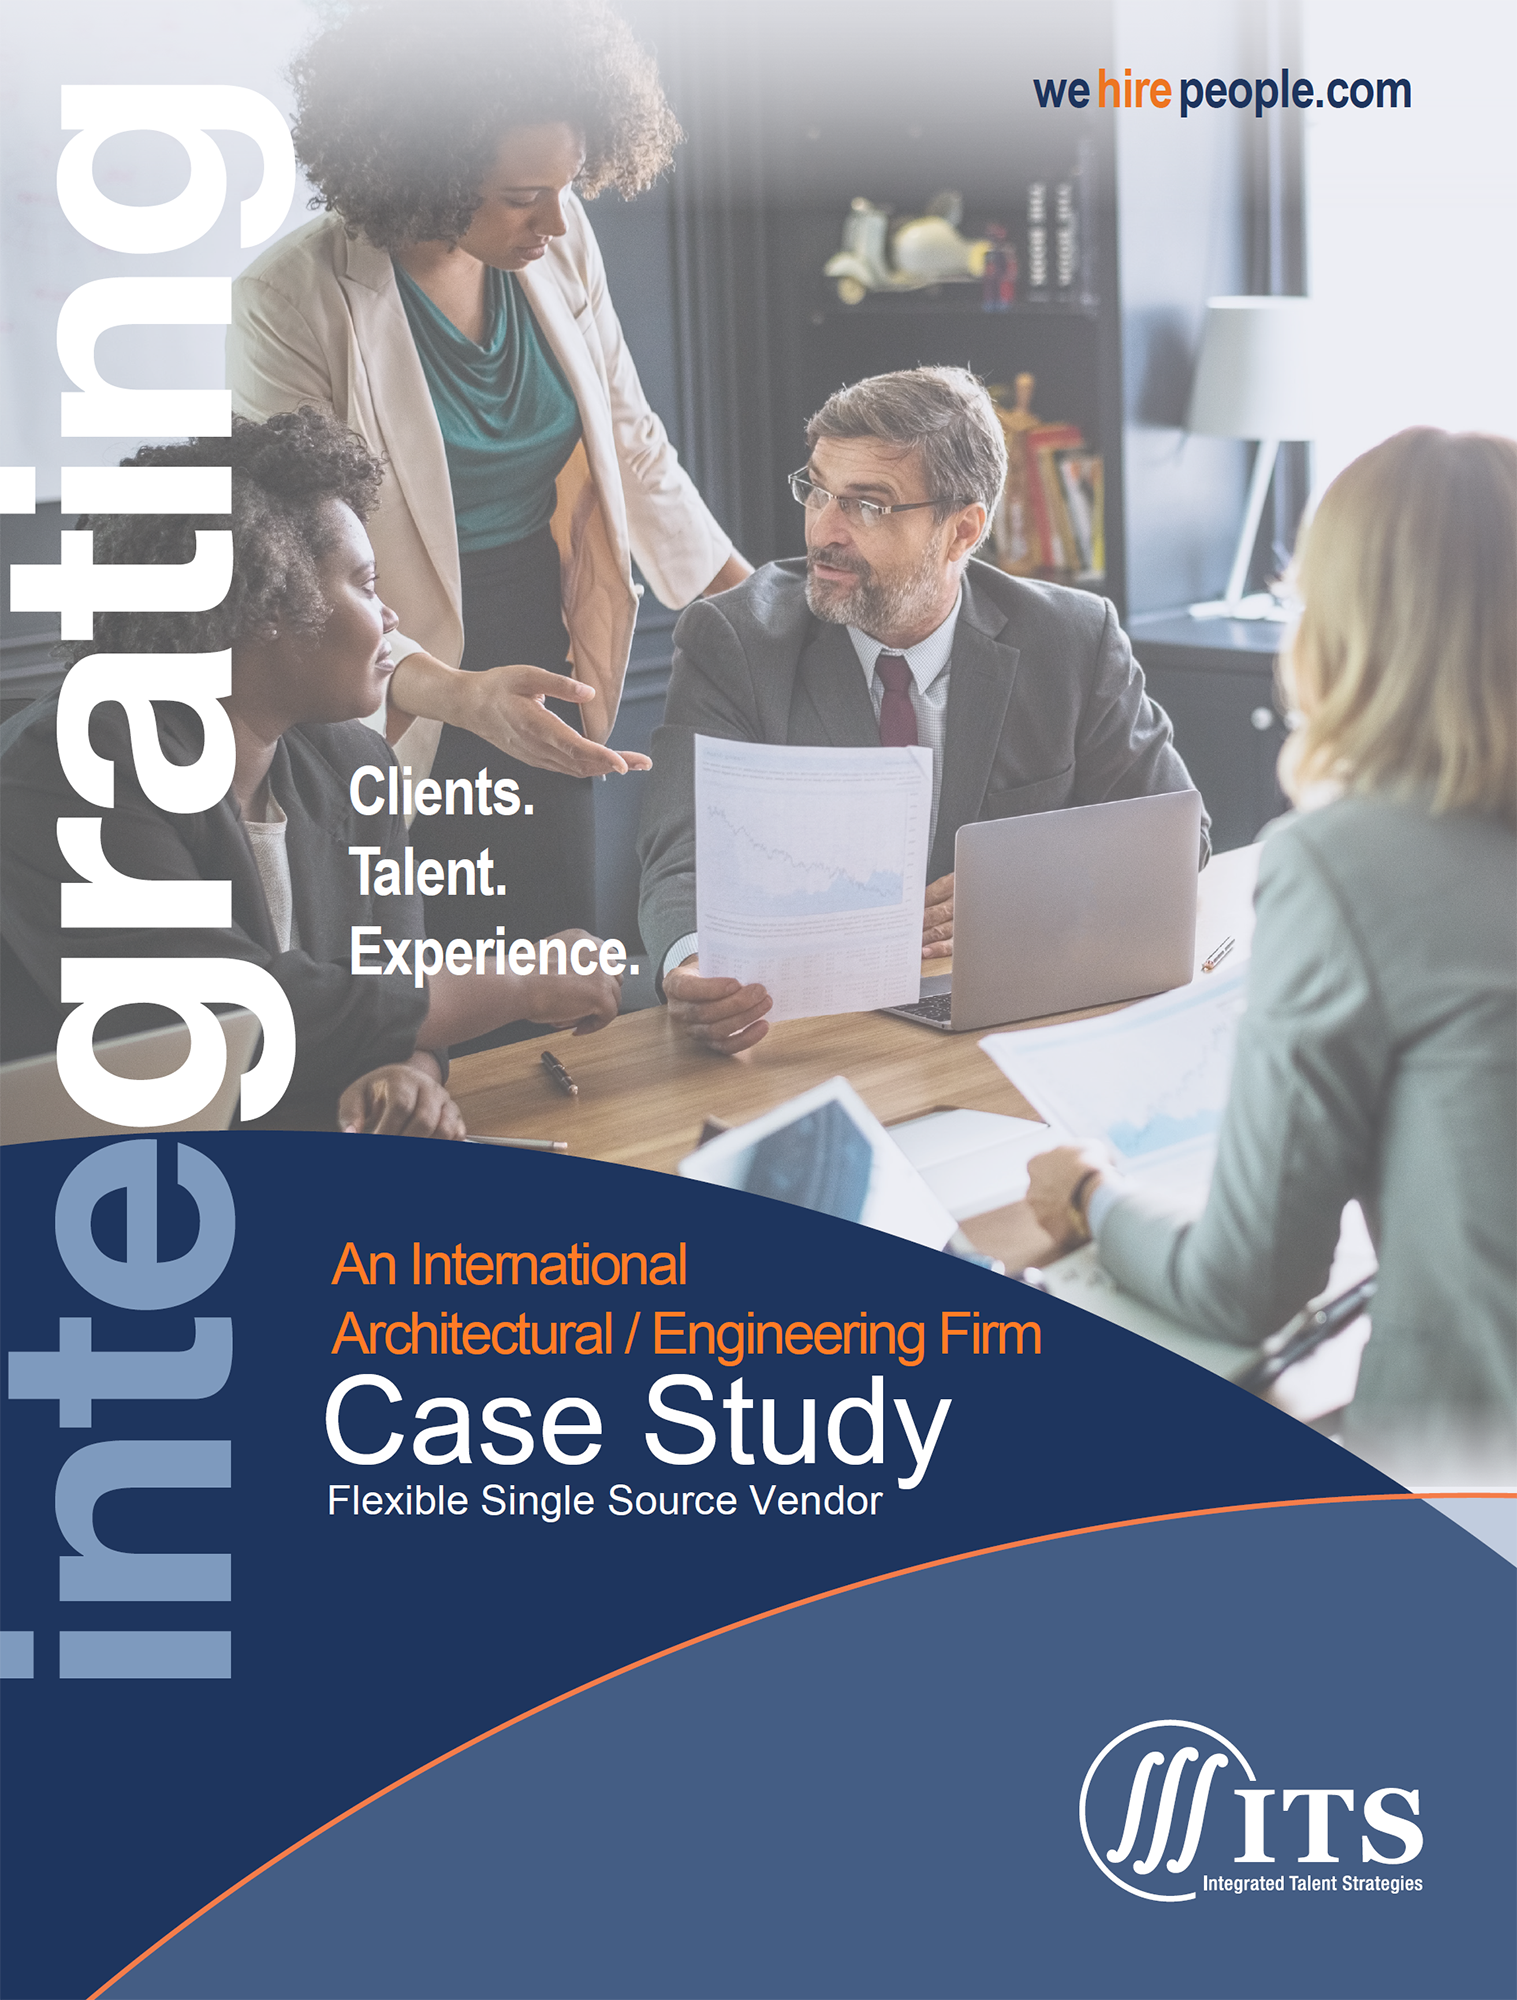 International A/E Firm - Case Study